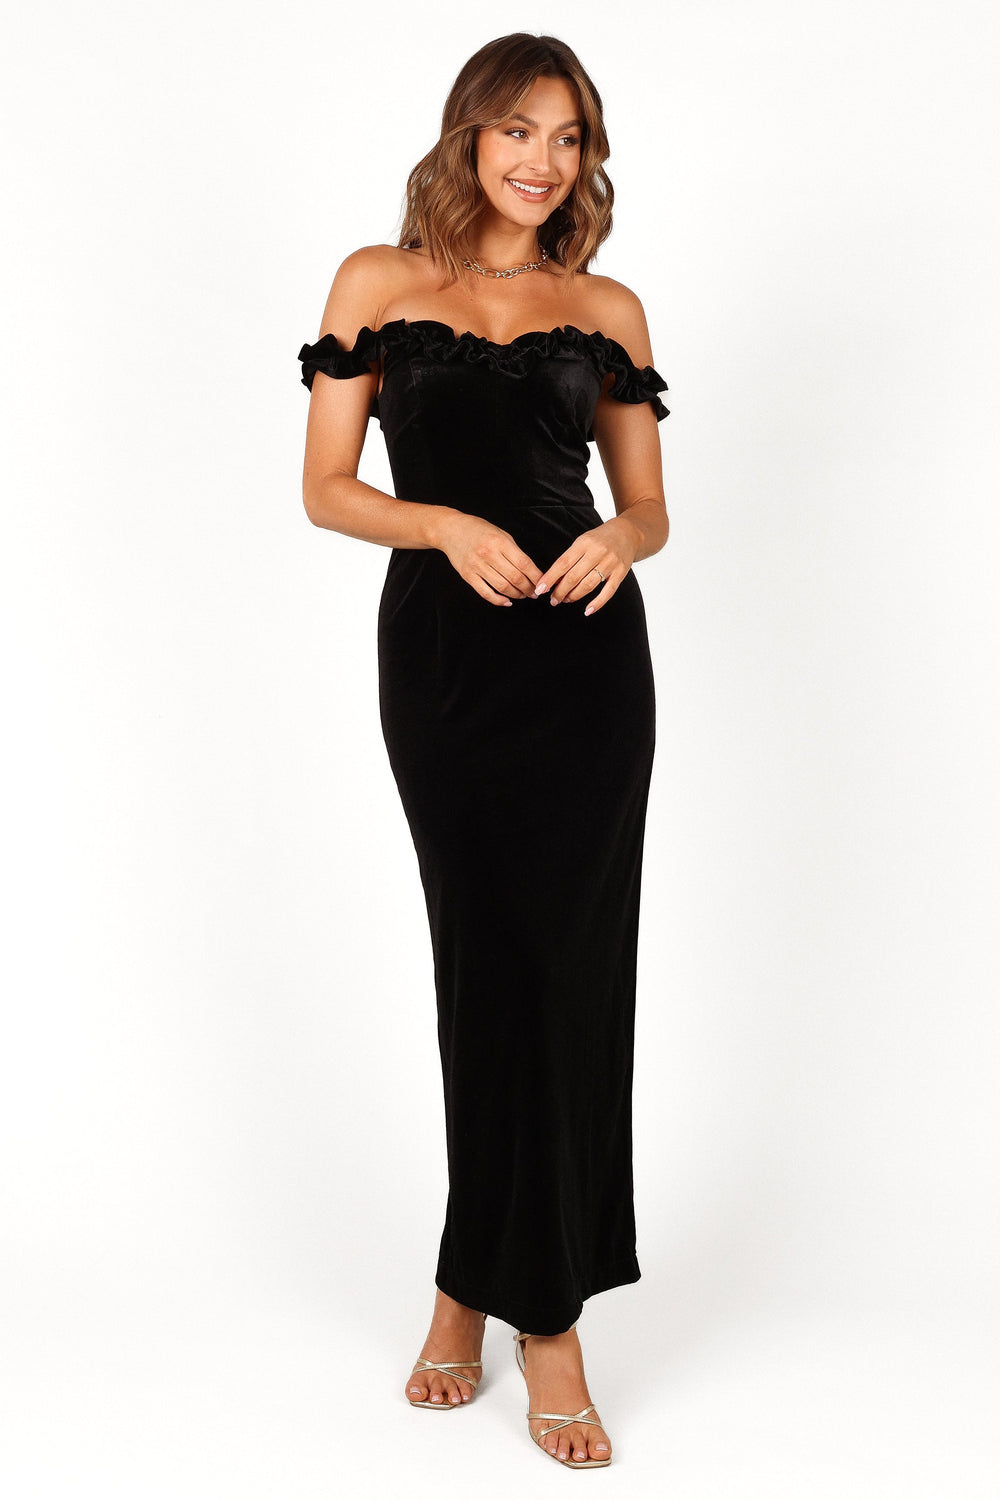 Petal and Pup USA DRESSES Celeste Off Shoulder Velvet Maxi Dress - Black